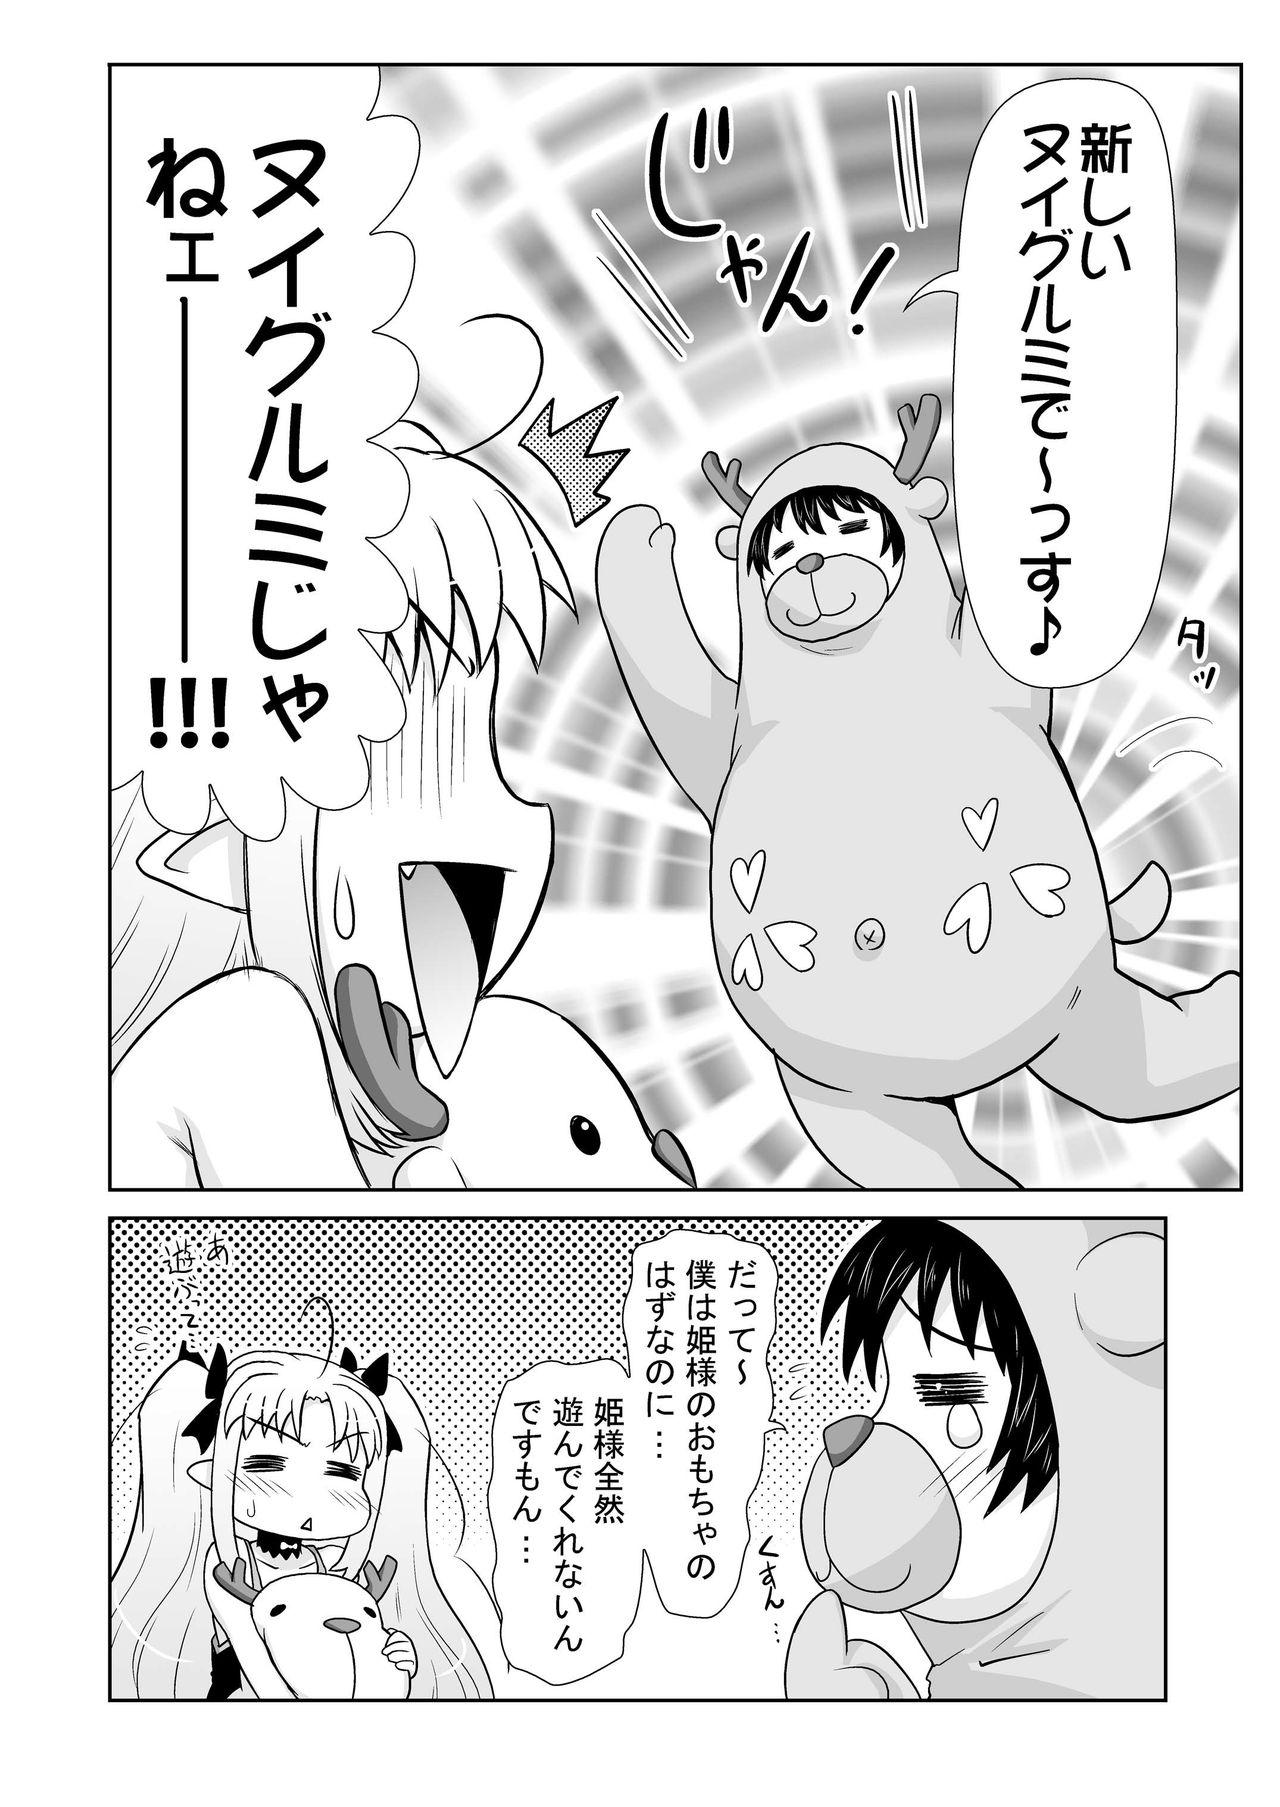 Piroca Boku wa Lotte-sama no Omocha desu ga, Nani ka? - Lotte no omocha Hot Women Having Sex - Page 6